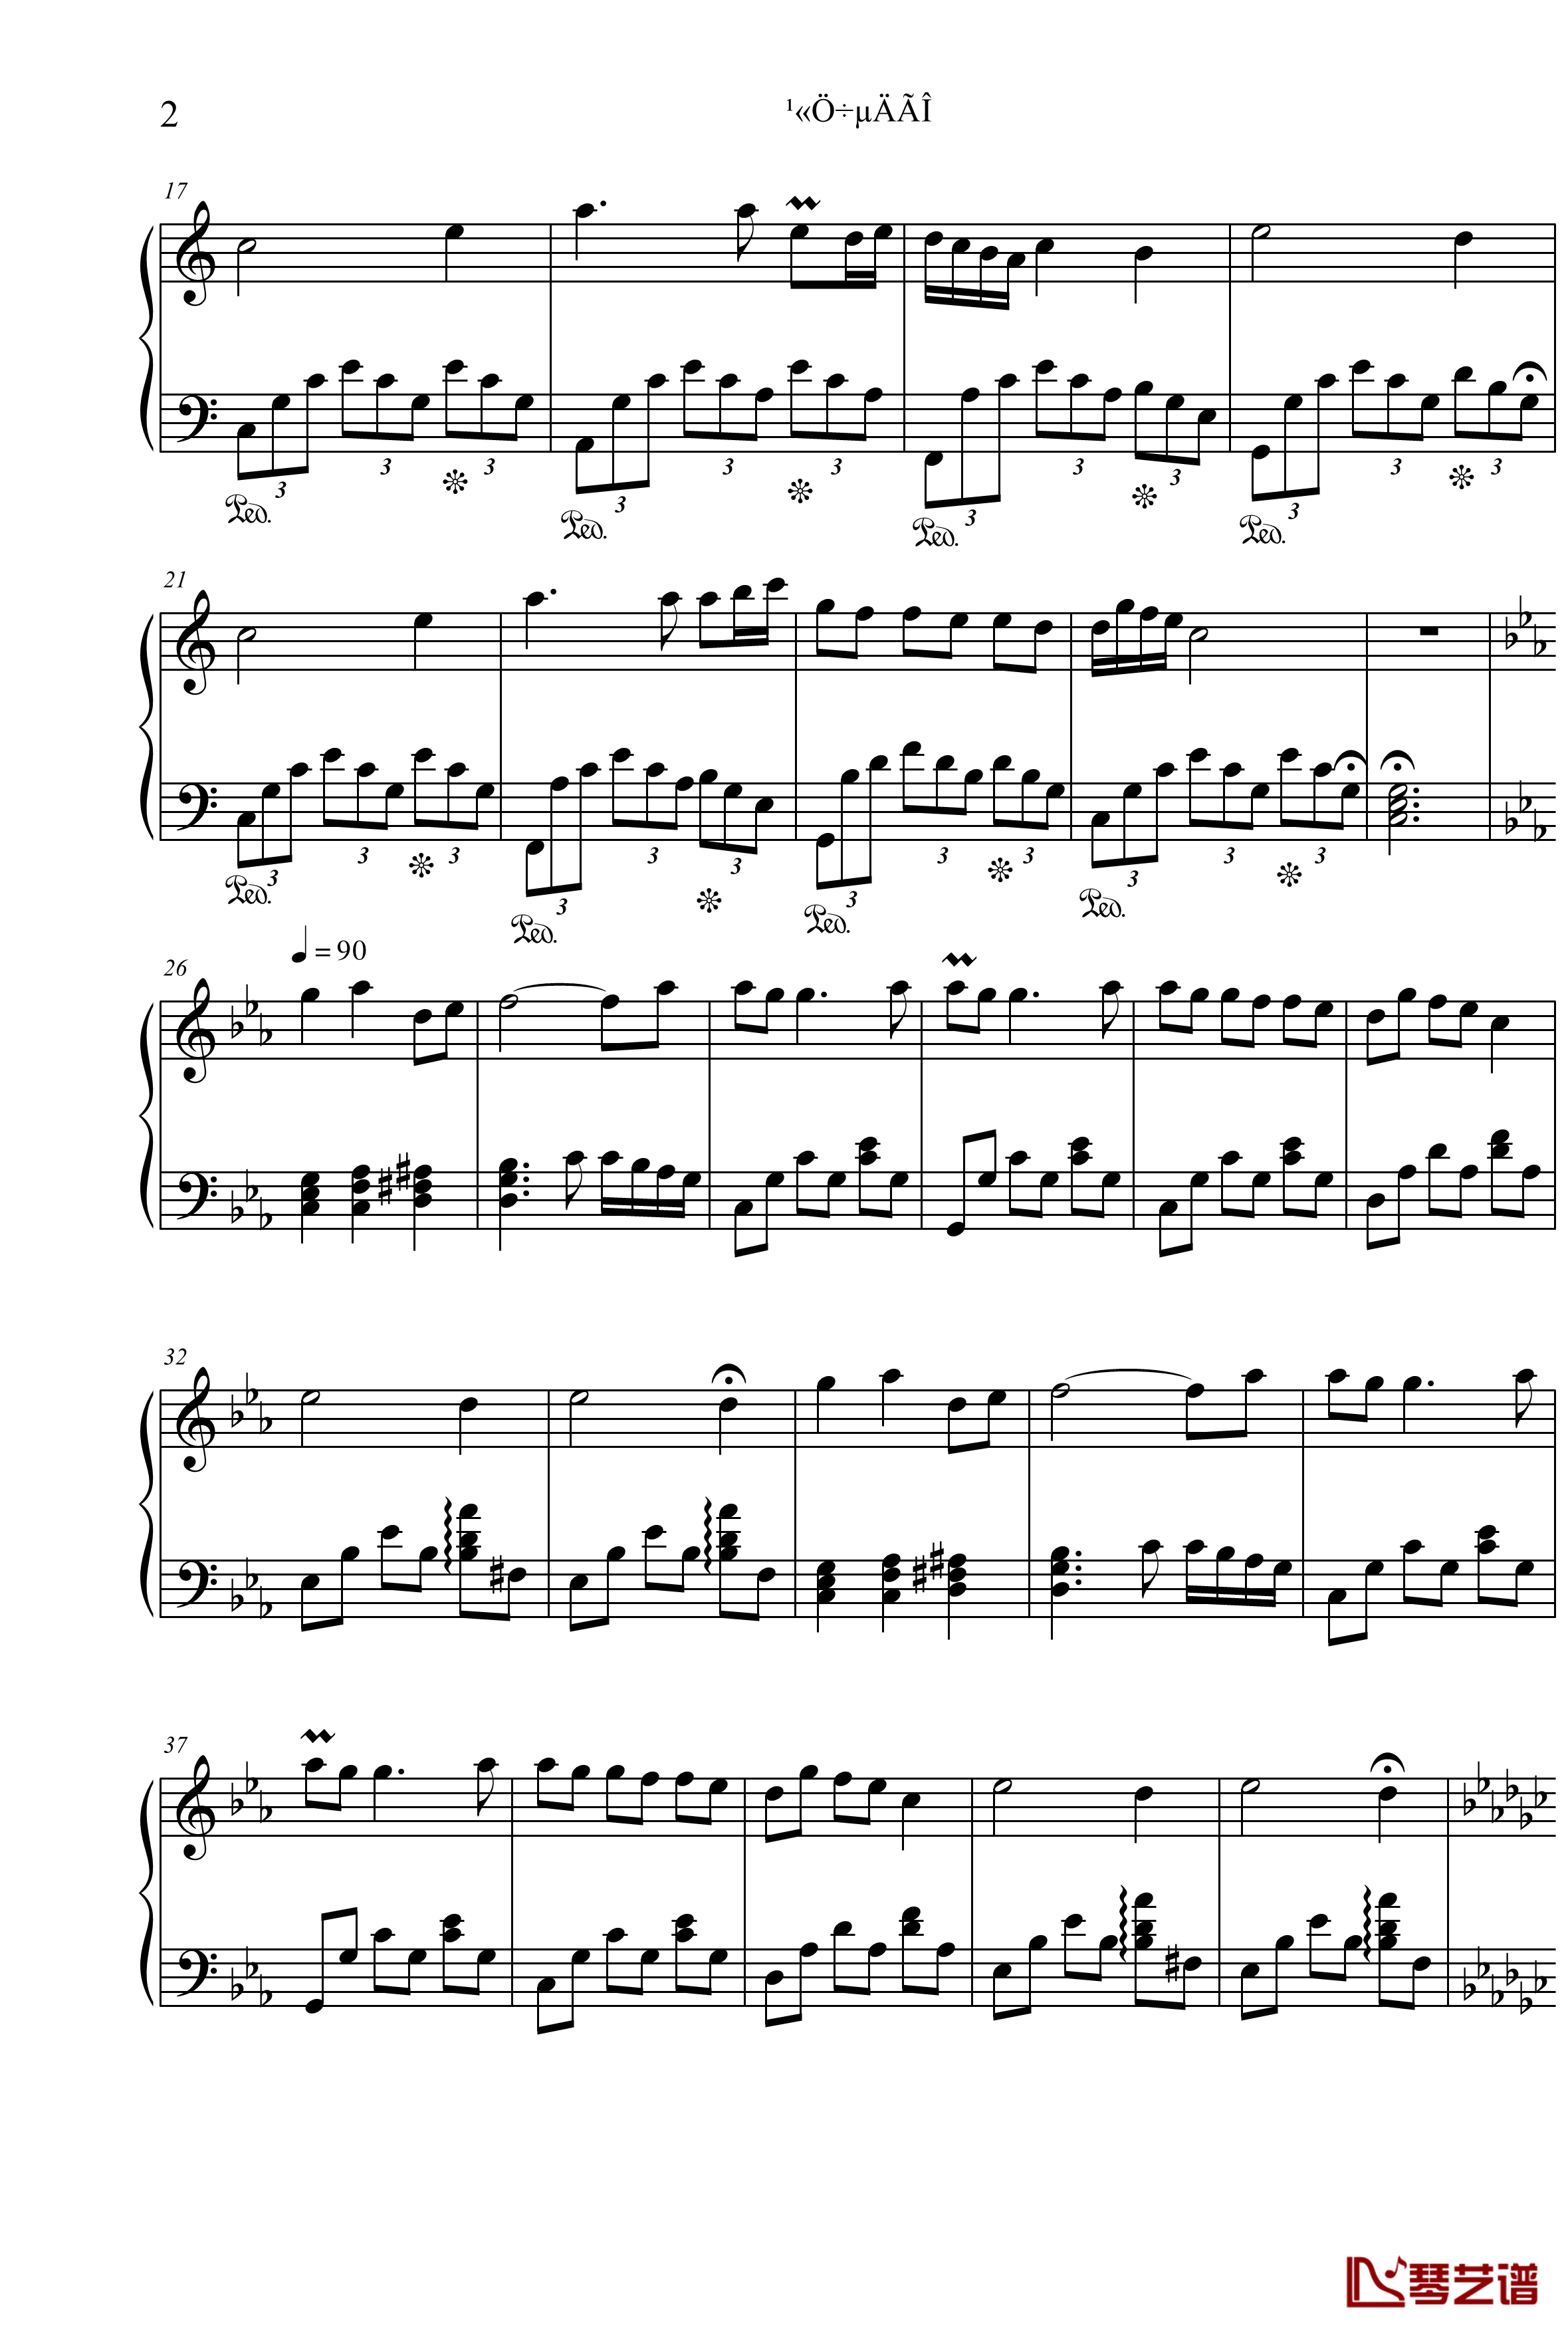 公主奏鸣曲第二章钢琴谱-公主的梦-项海波2